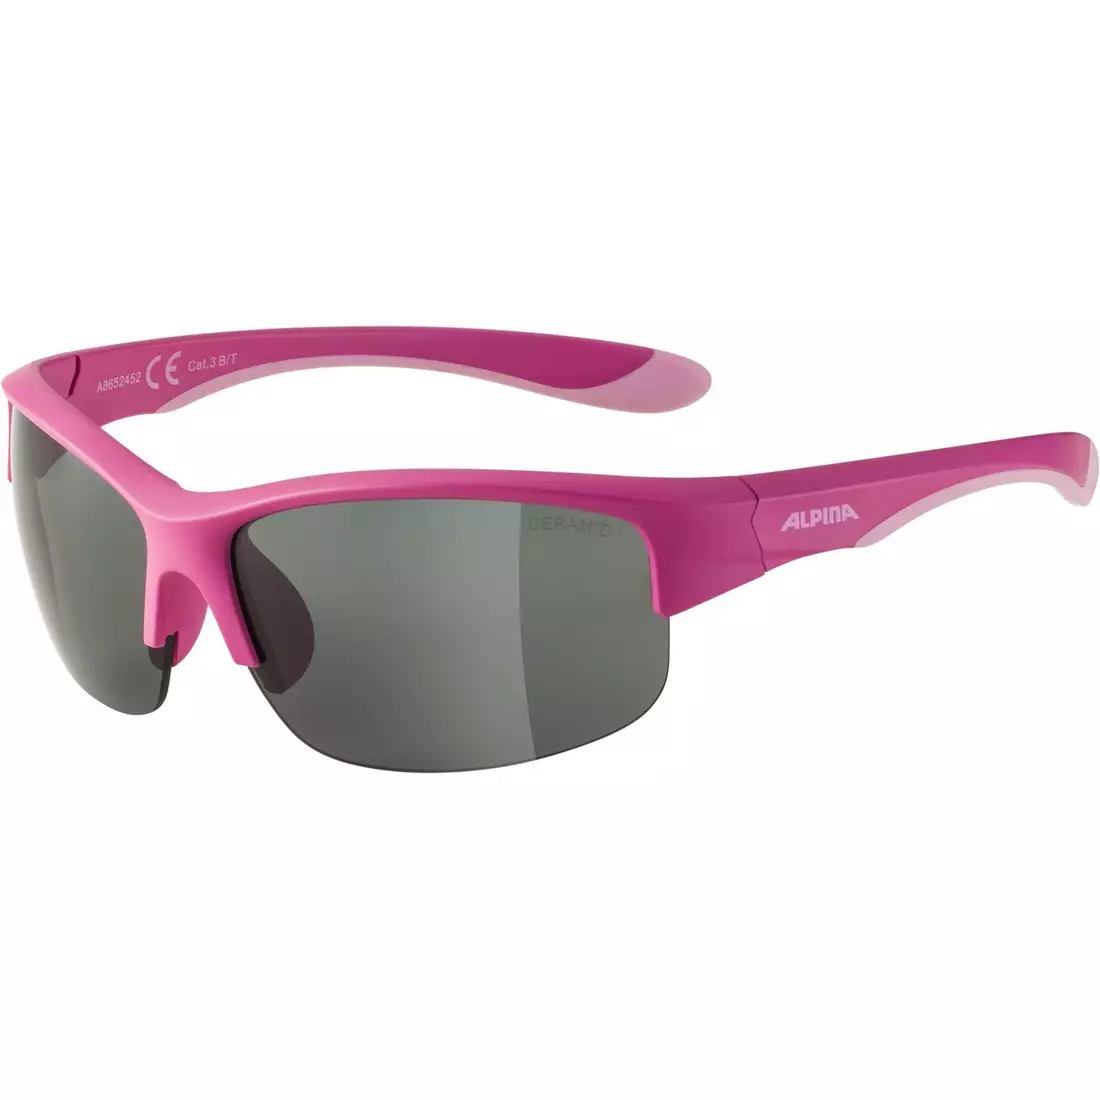 ALPINA JUNIOR FLEXXY YOUTH HR gyerek kerékpáros/sport szemüveg, pink matt